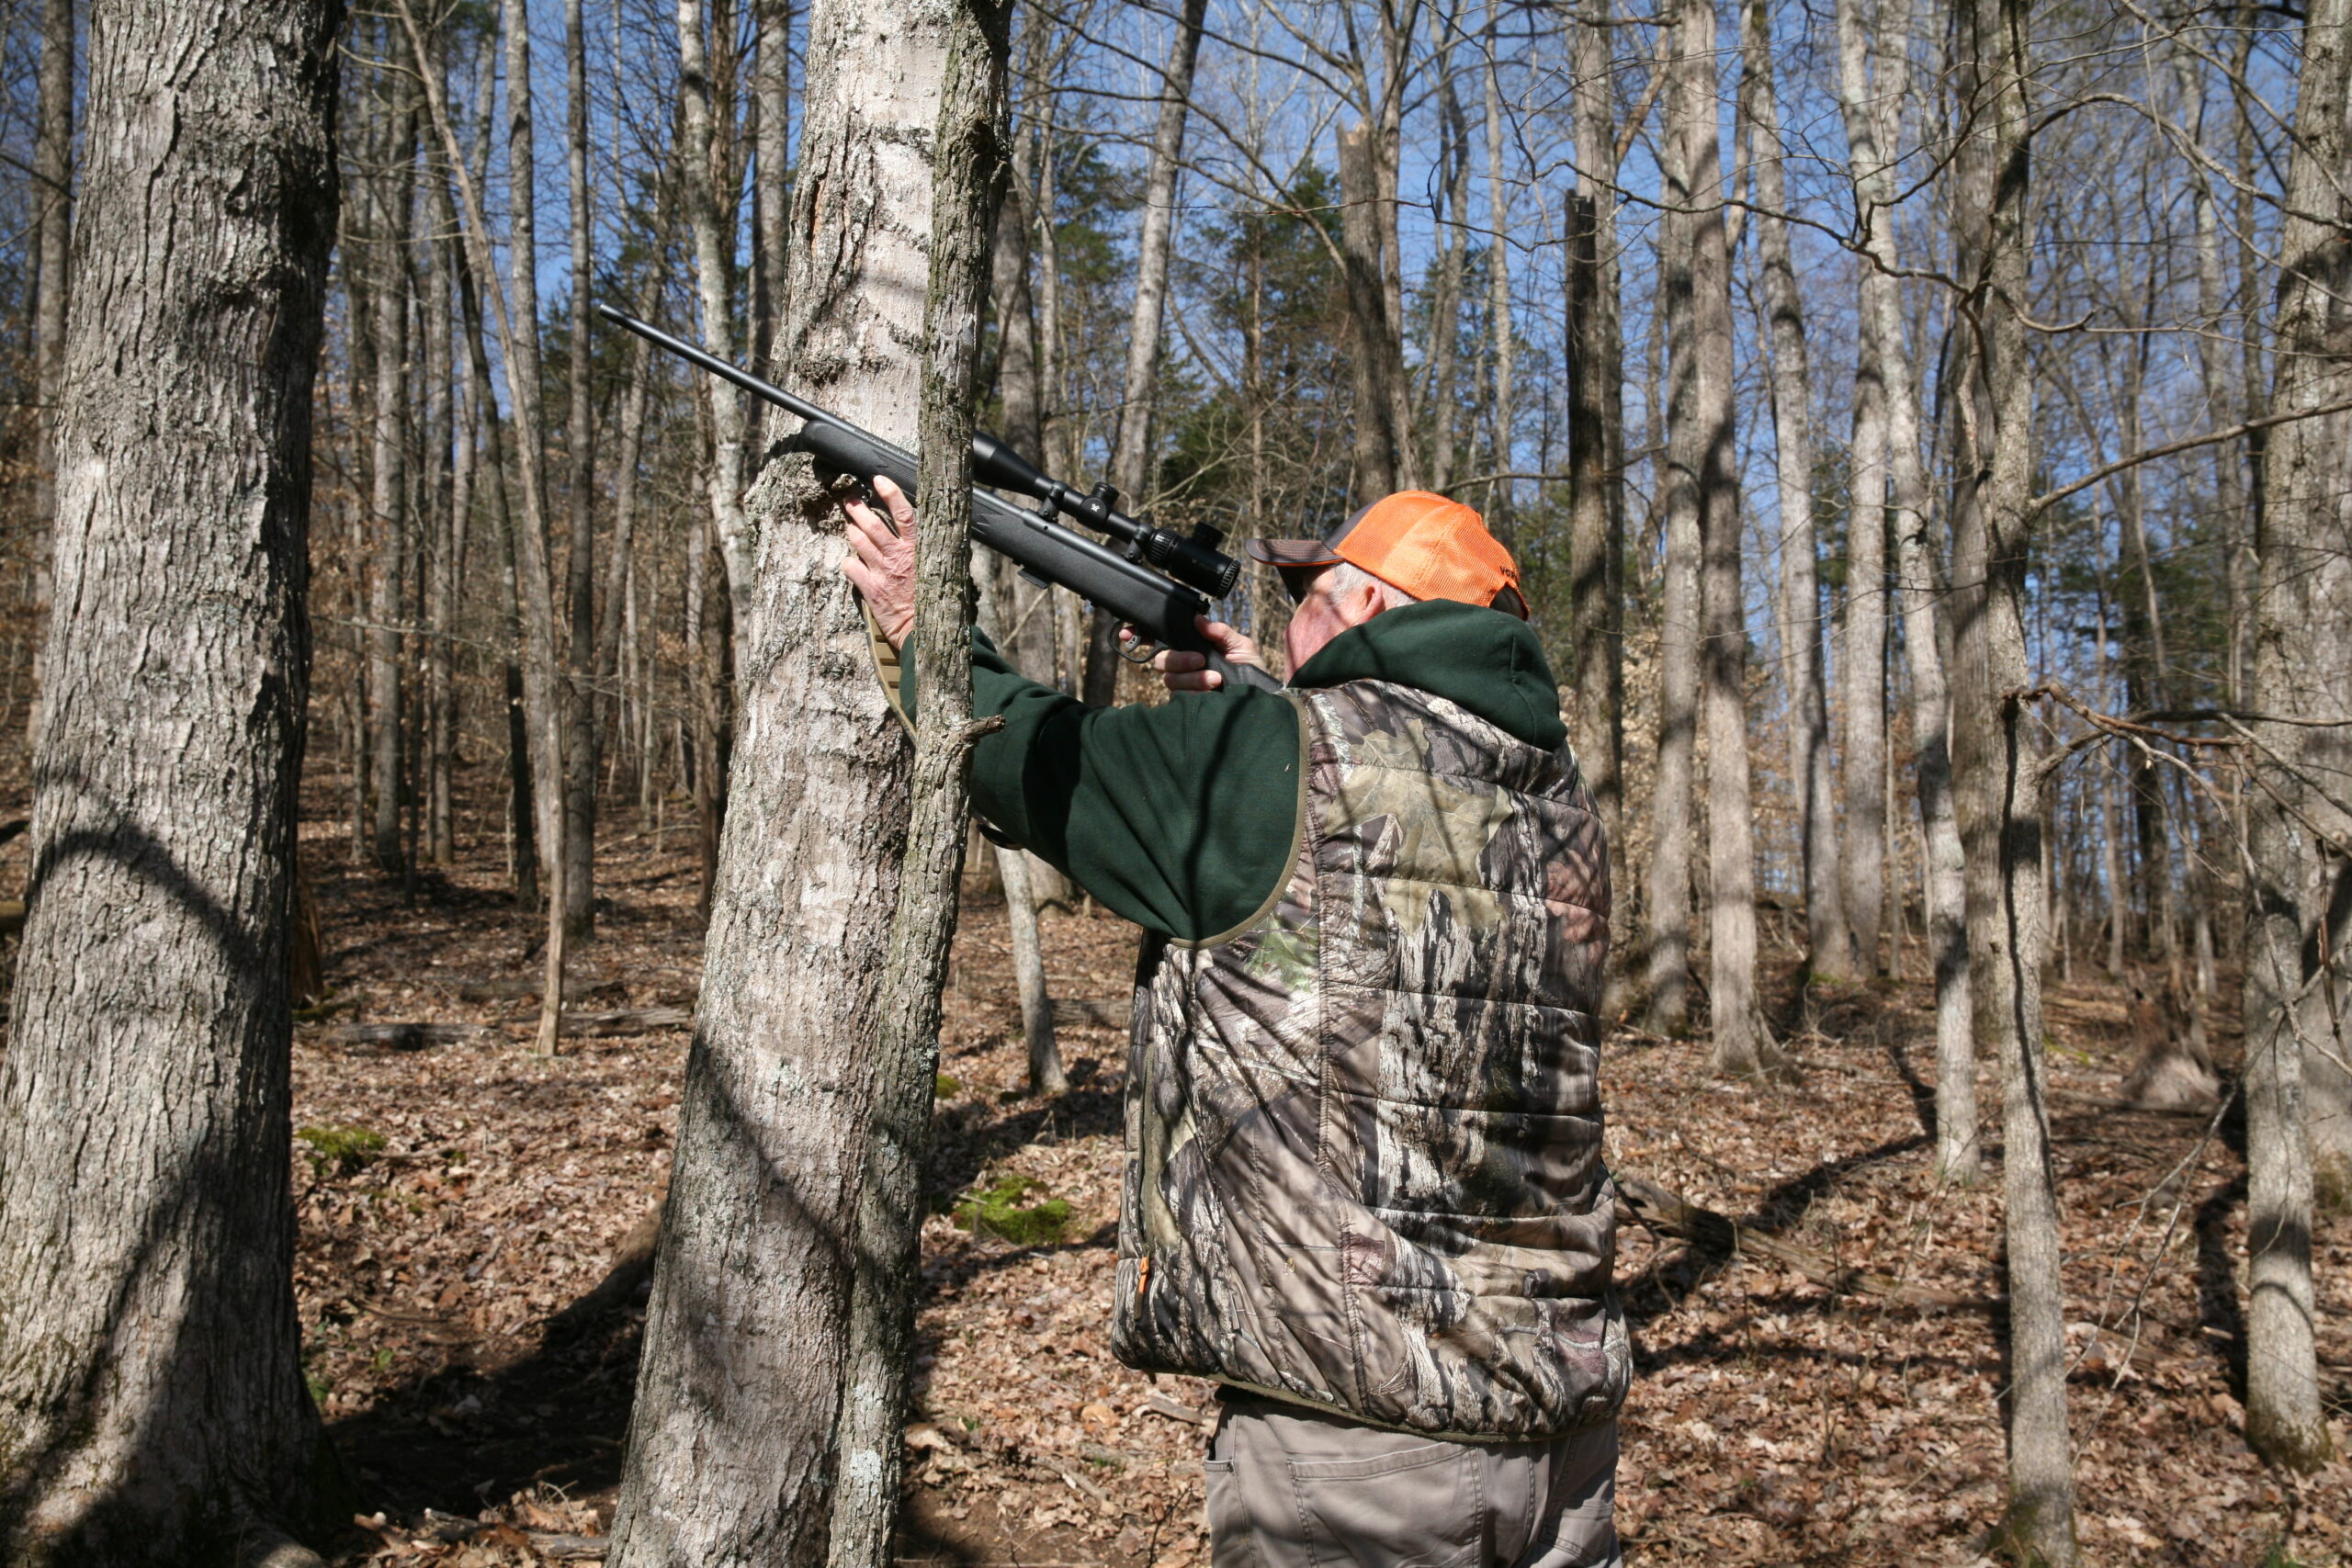 Hunter shooting at a squirrel.